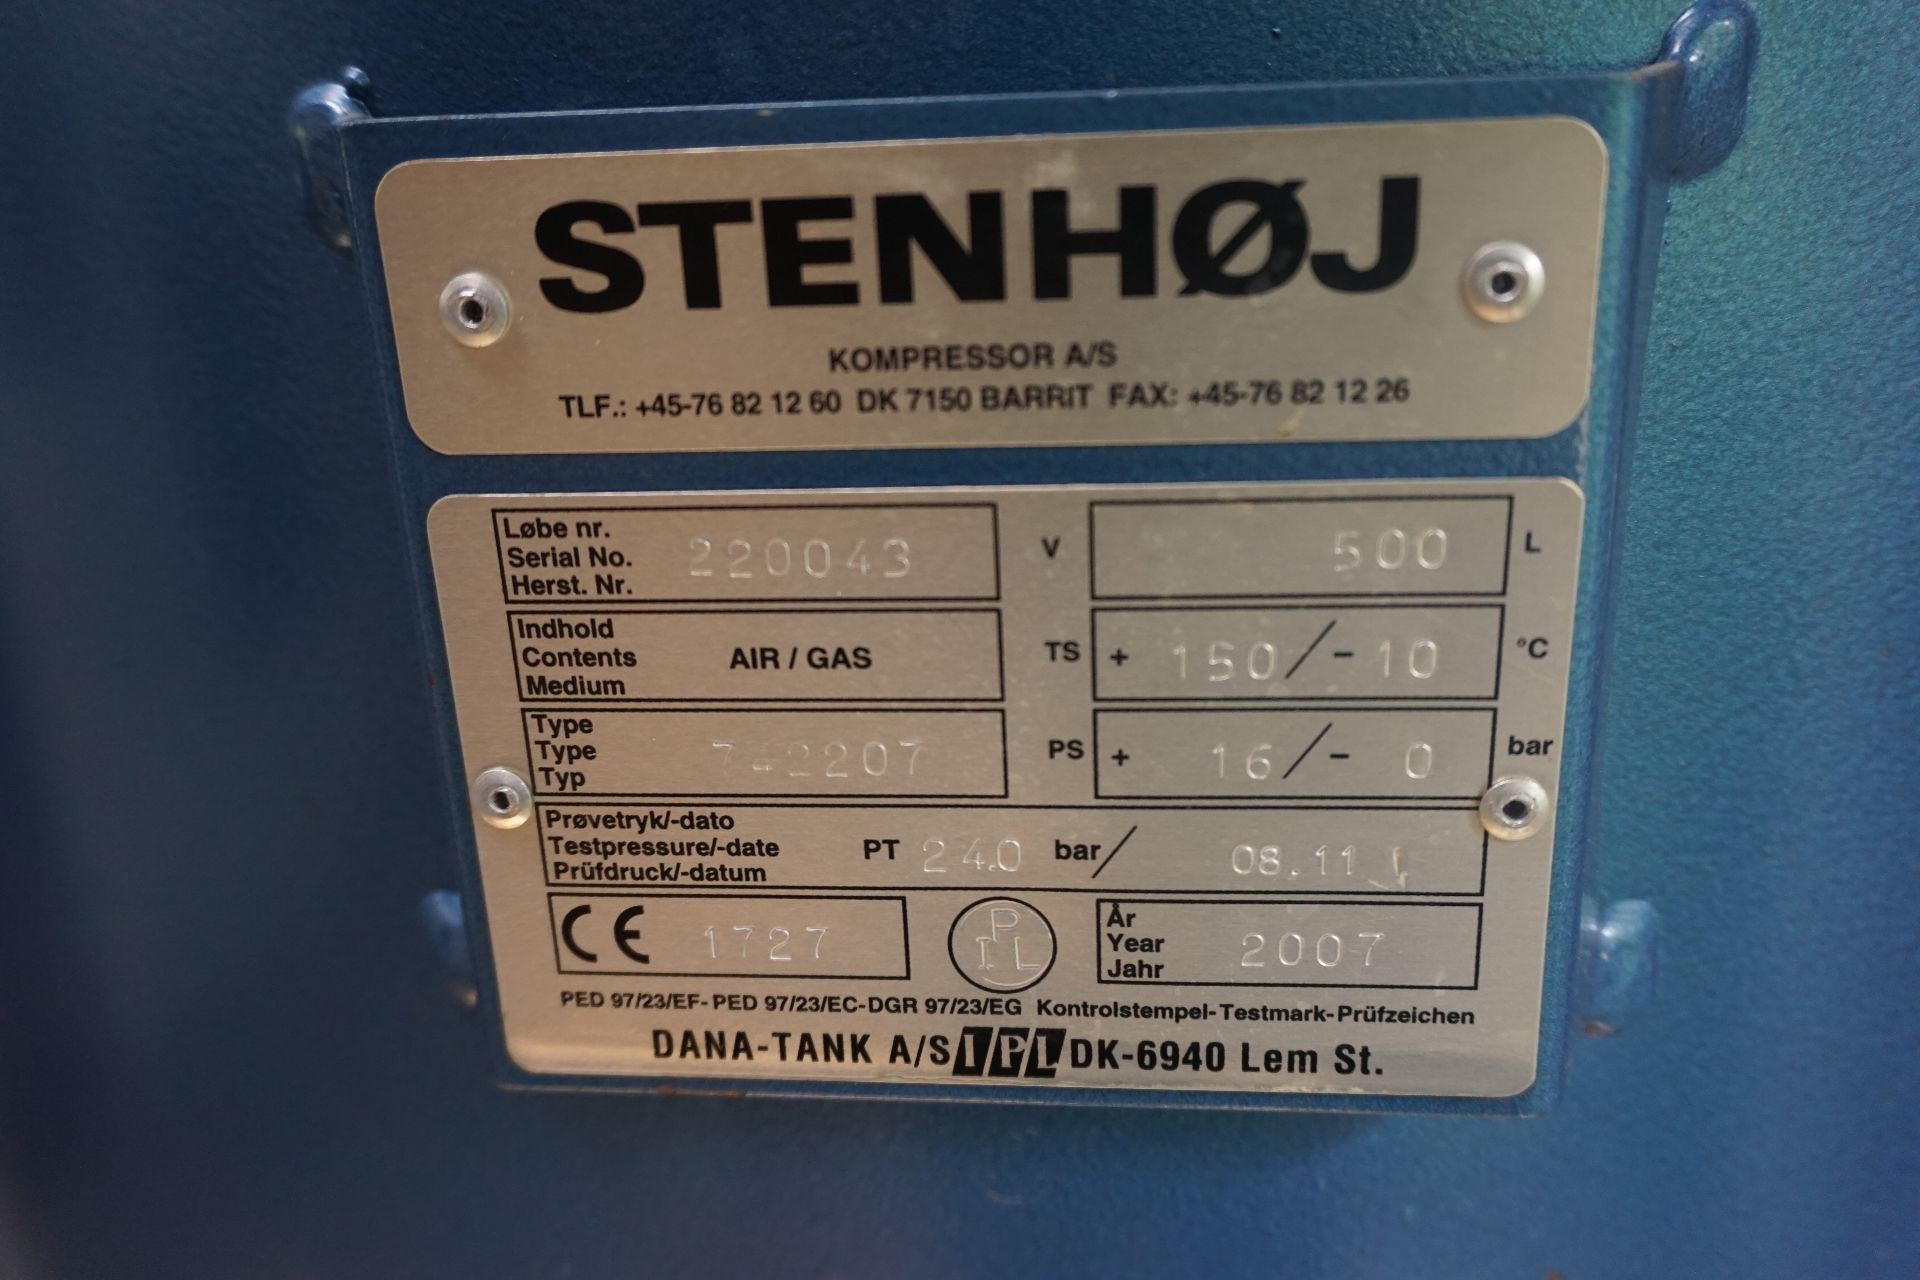 Kompressor, Mærke: Stenhøj. Model: SI - 16 + Tryktank køletørre - KJ Maskinauktioner